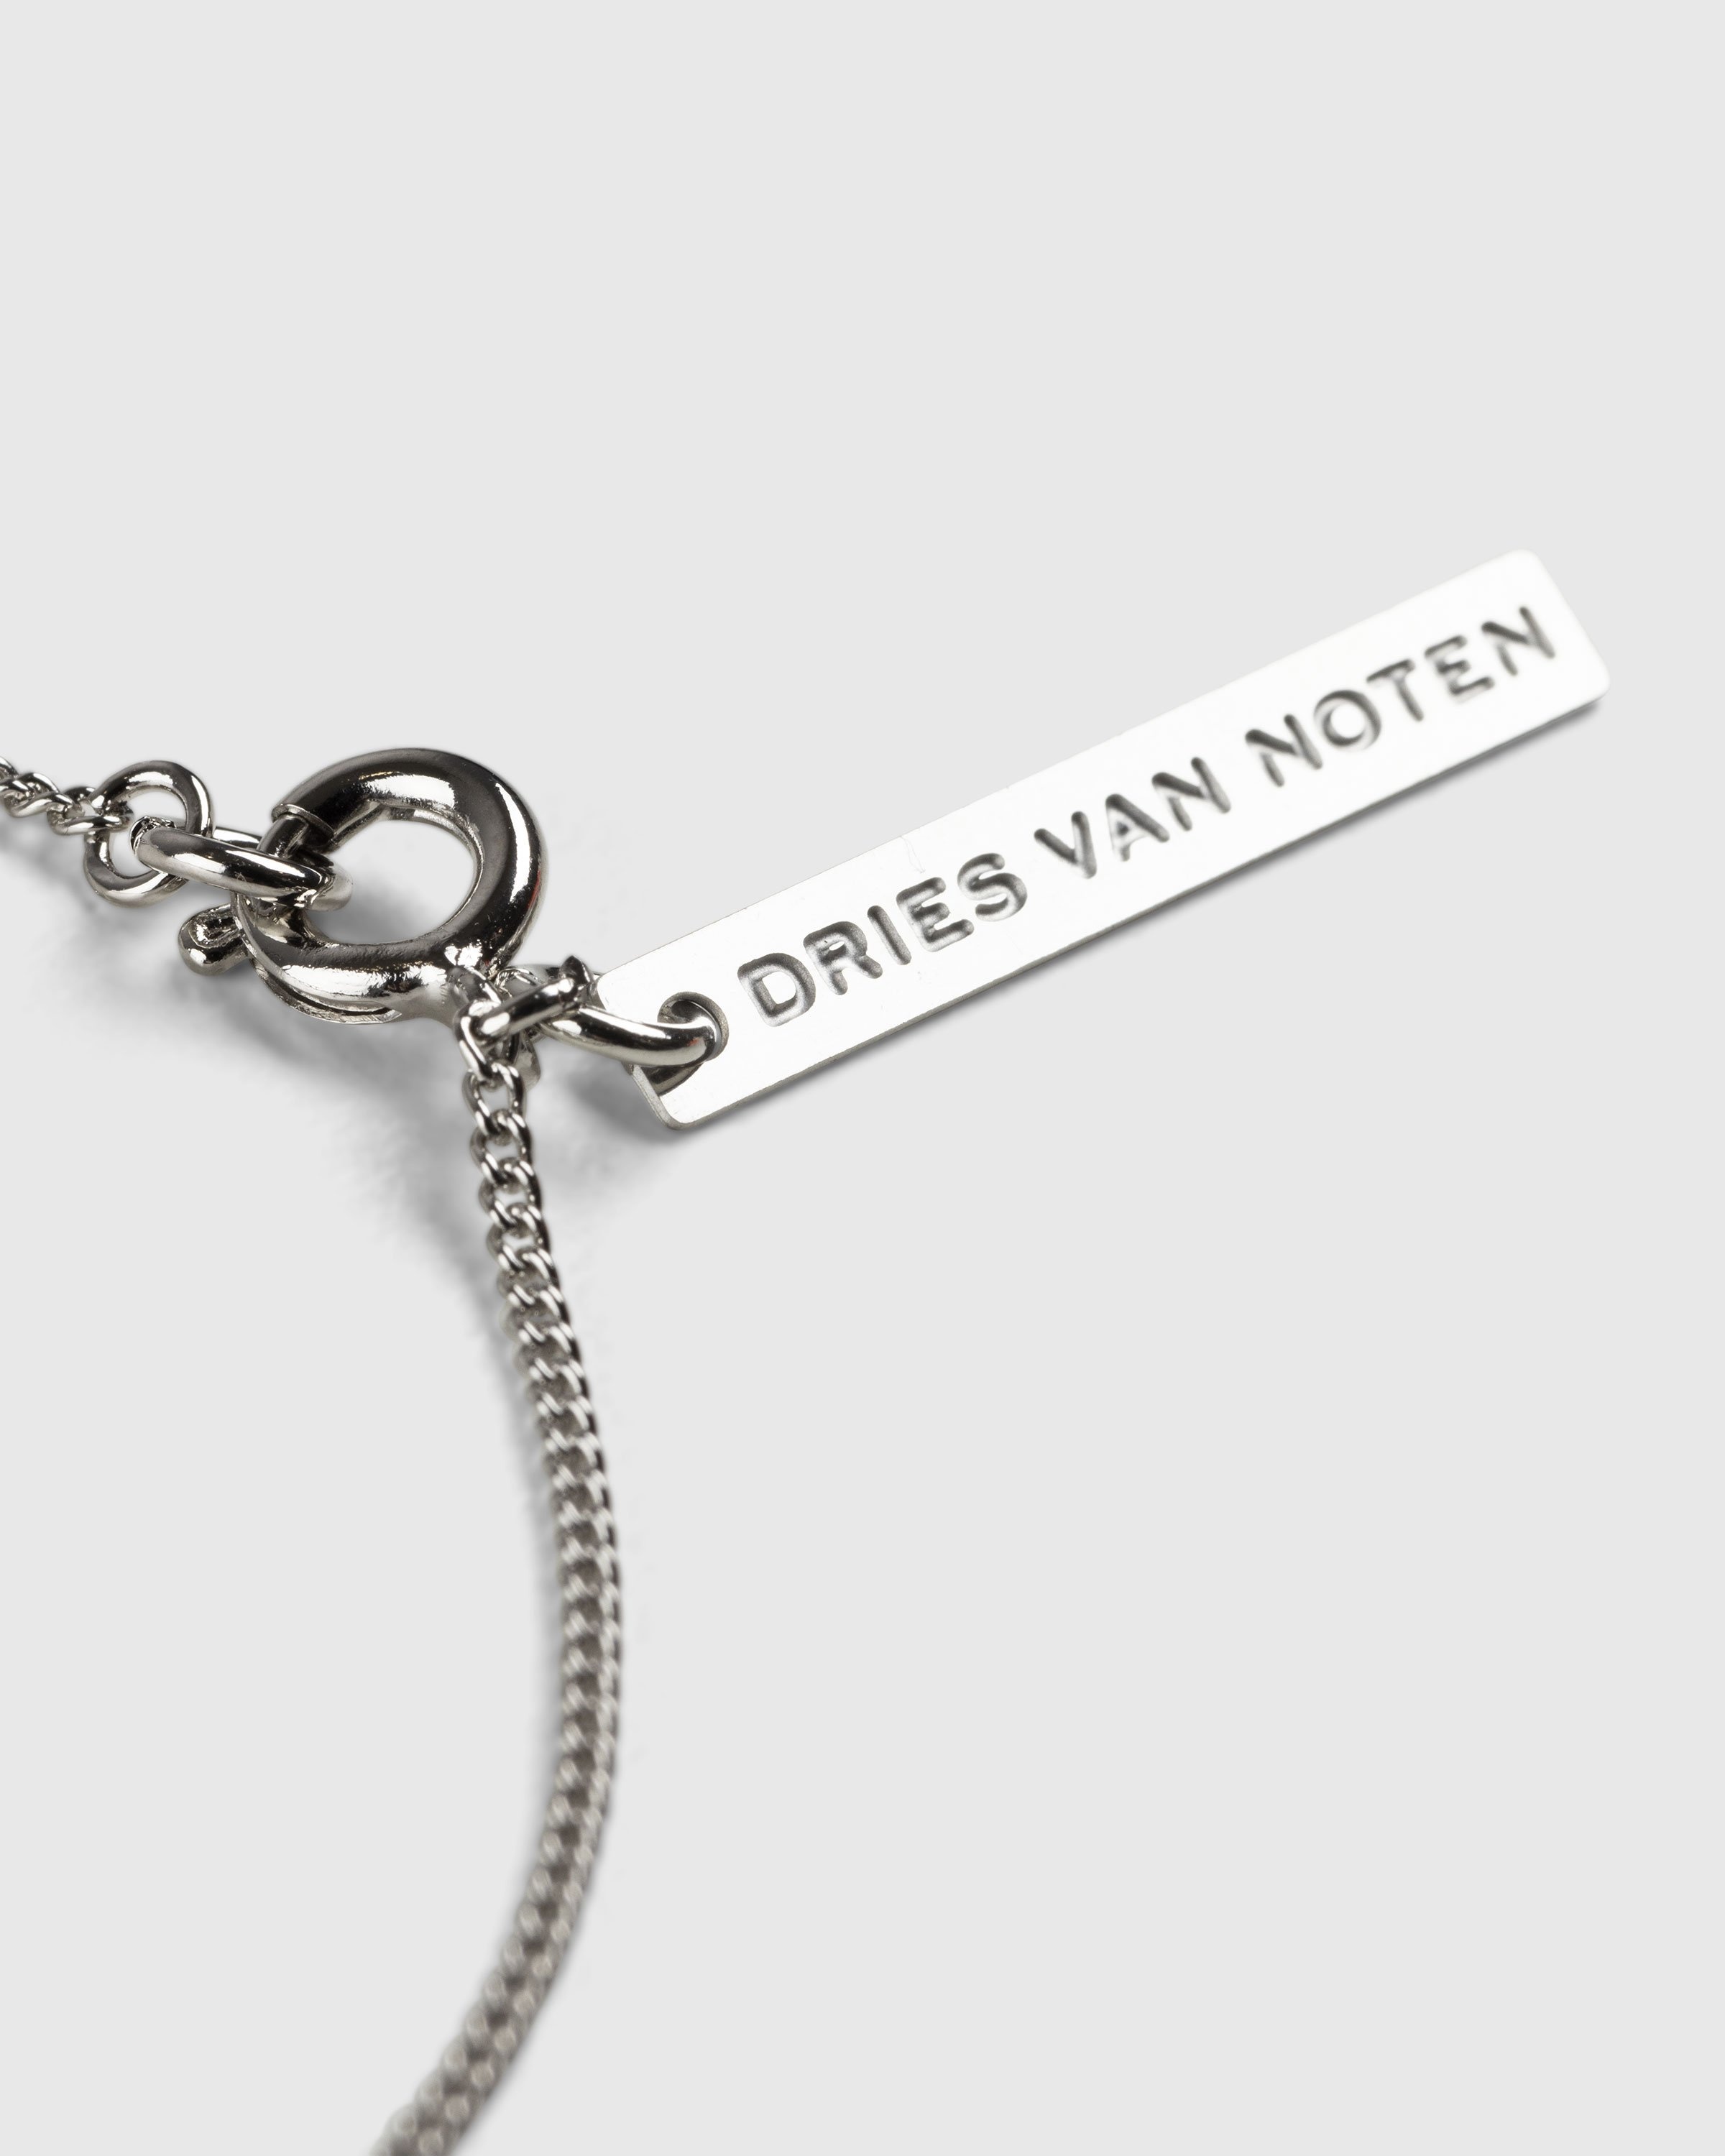 Dries van Noten – Logo Tag Necklace Silver - Necklaces - Silver - Image 2